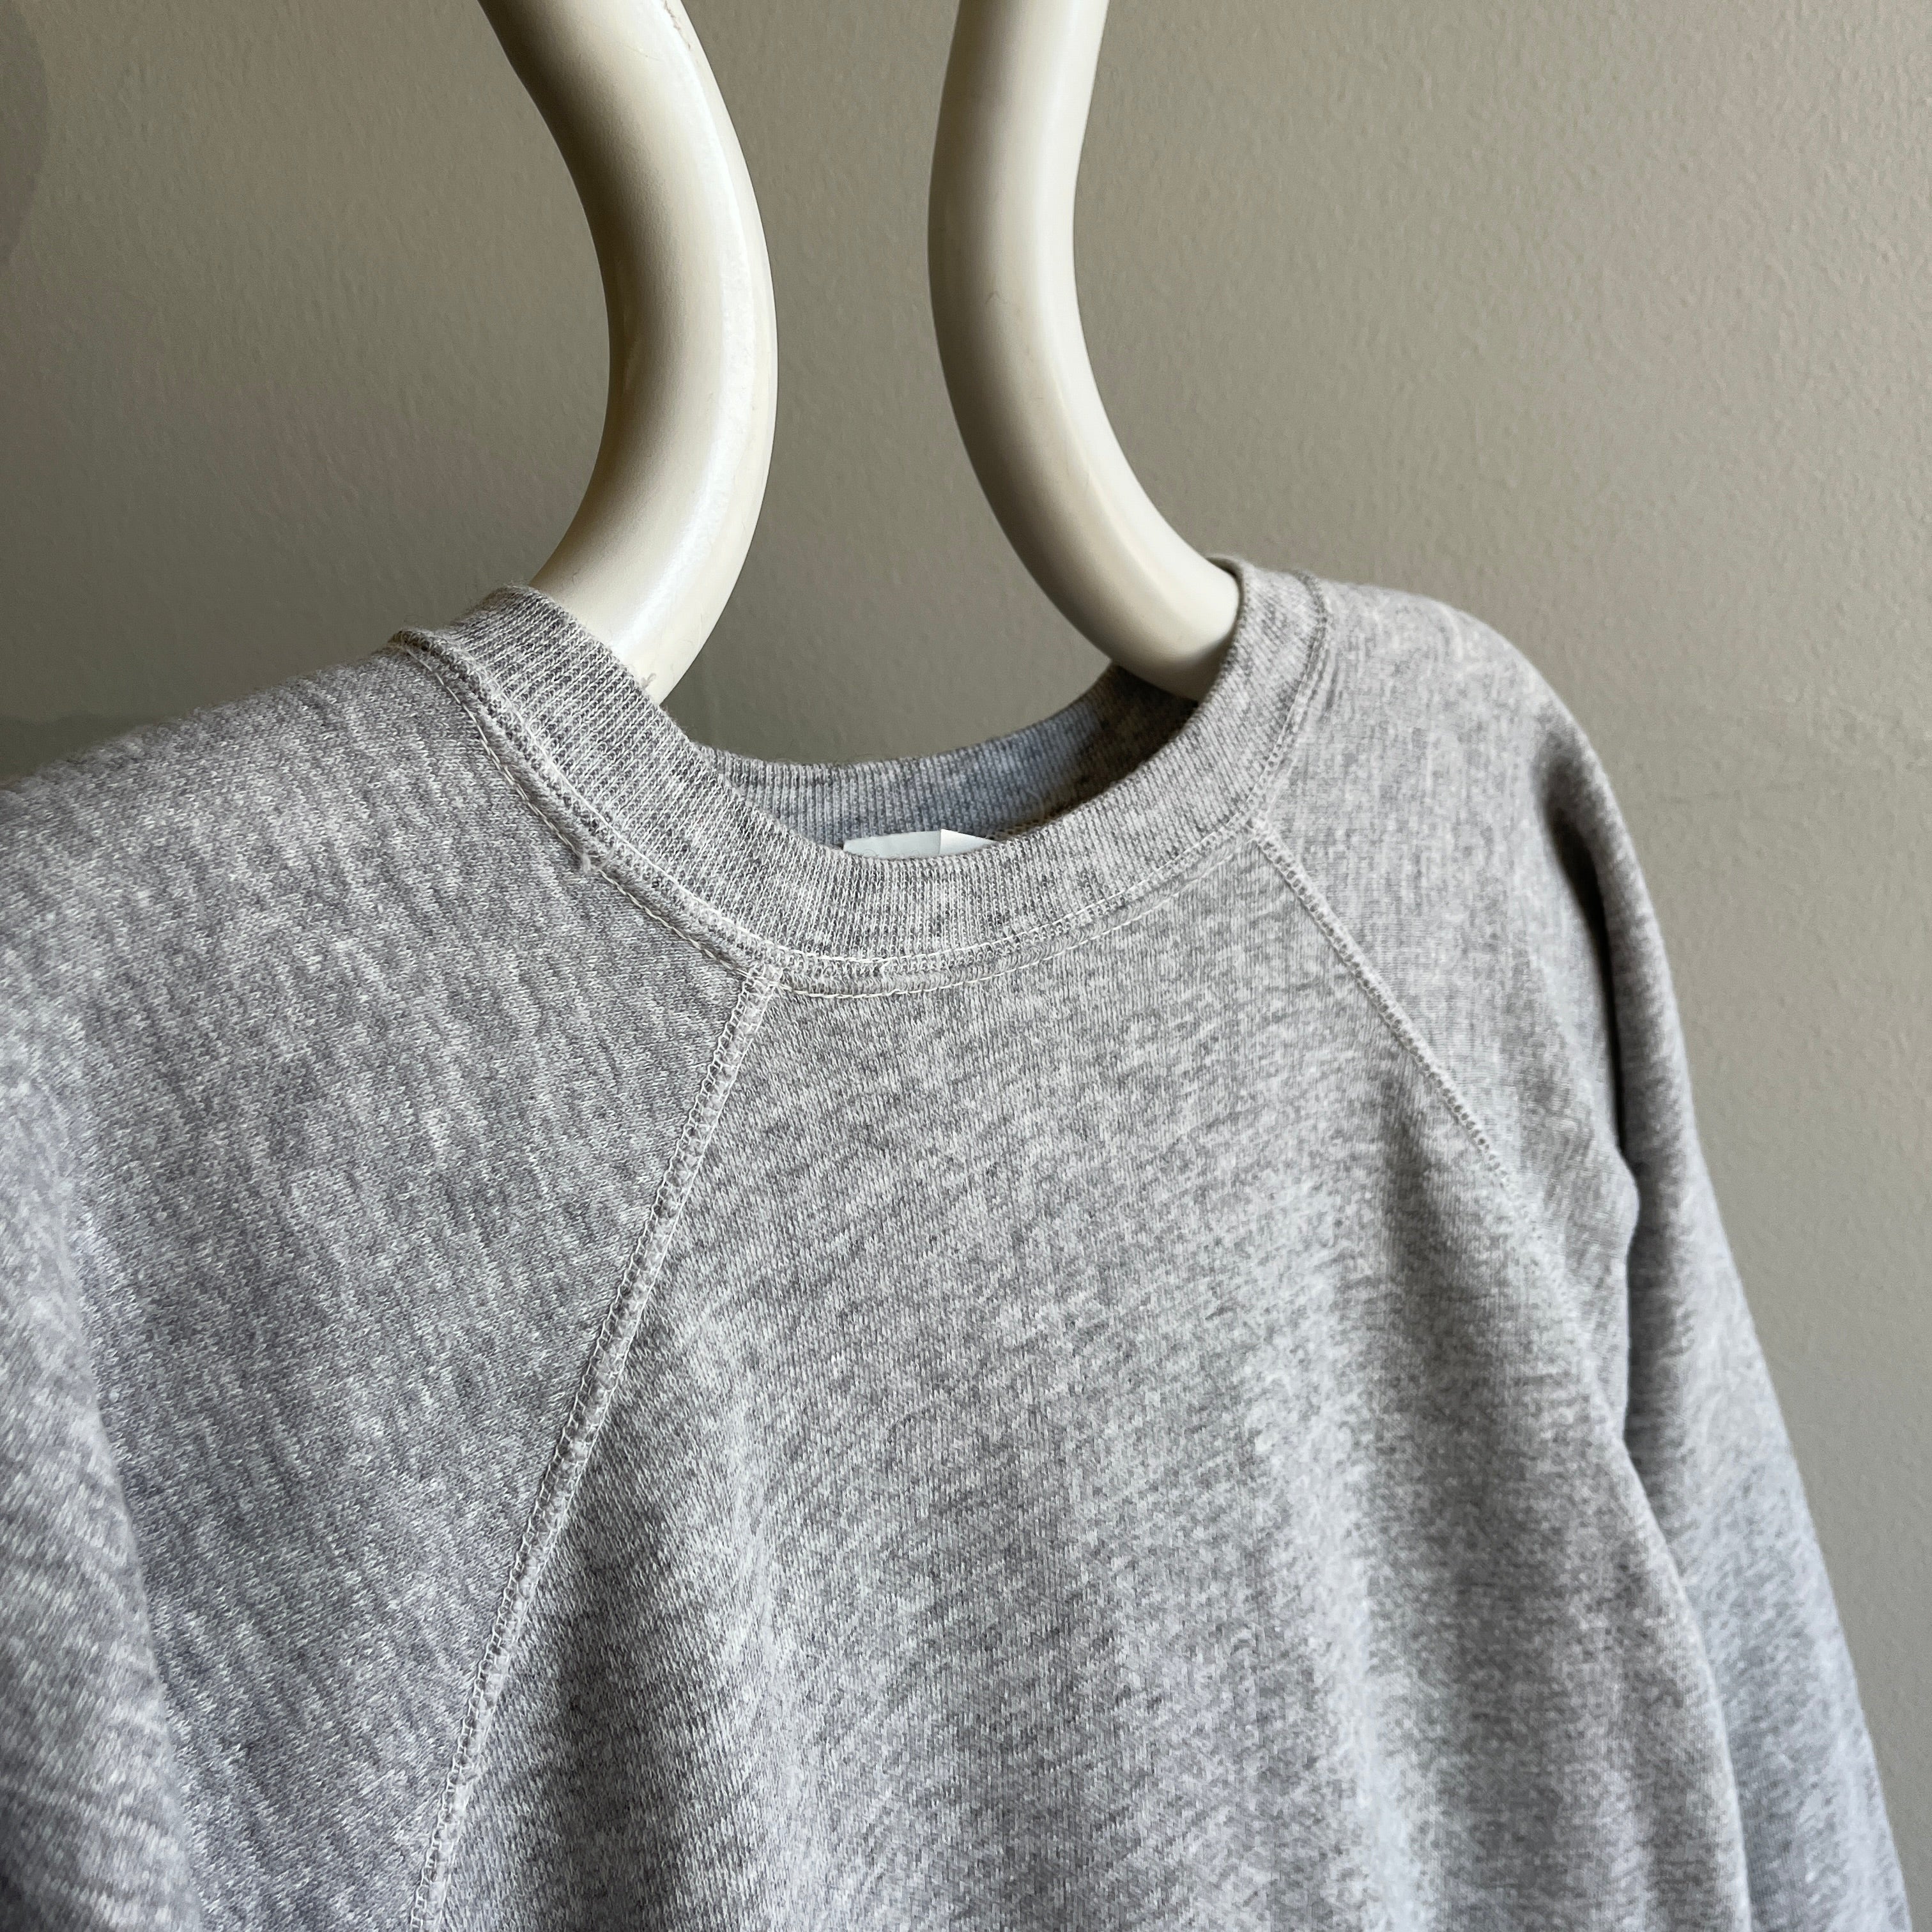 1980s Blank Gray Raglan Sweatshirt by Soffe Athletic